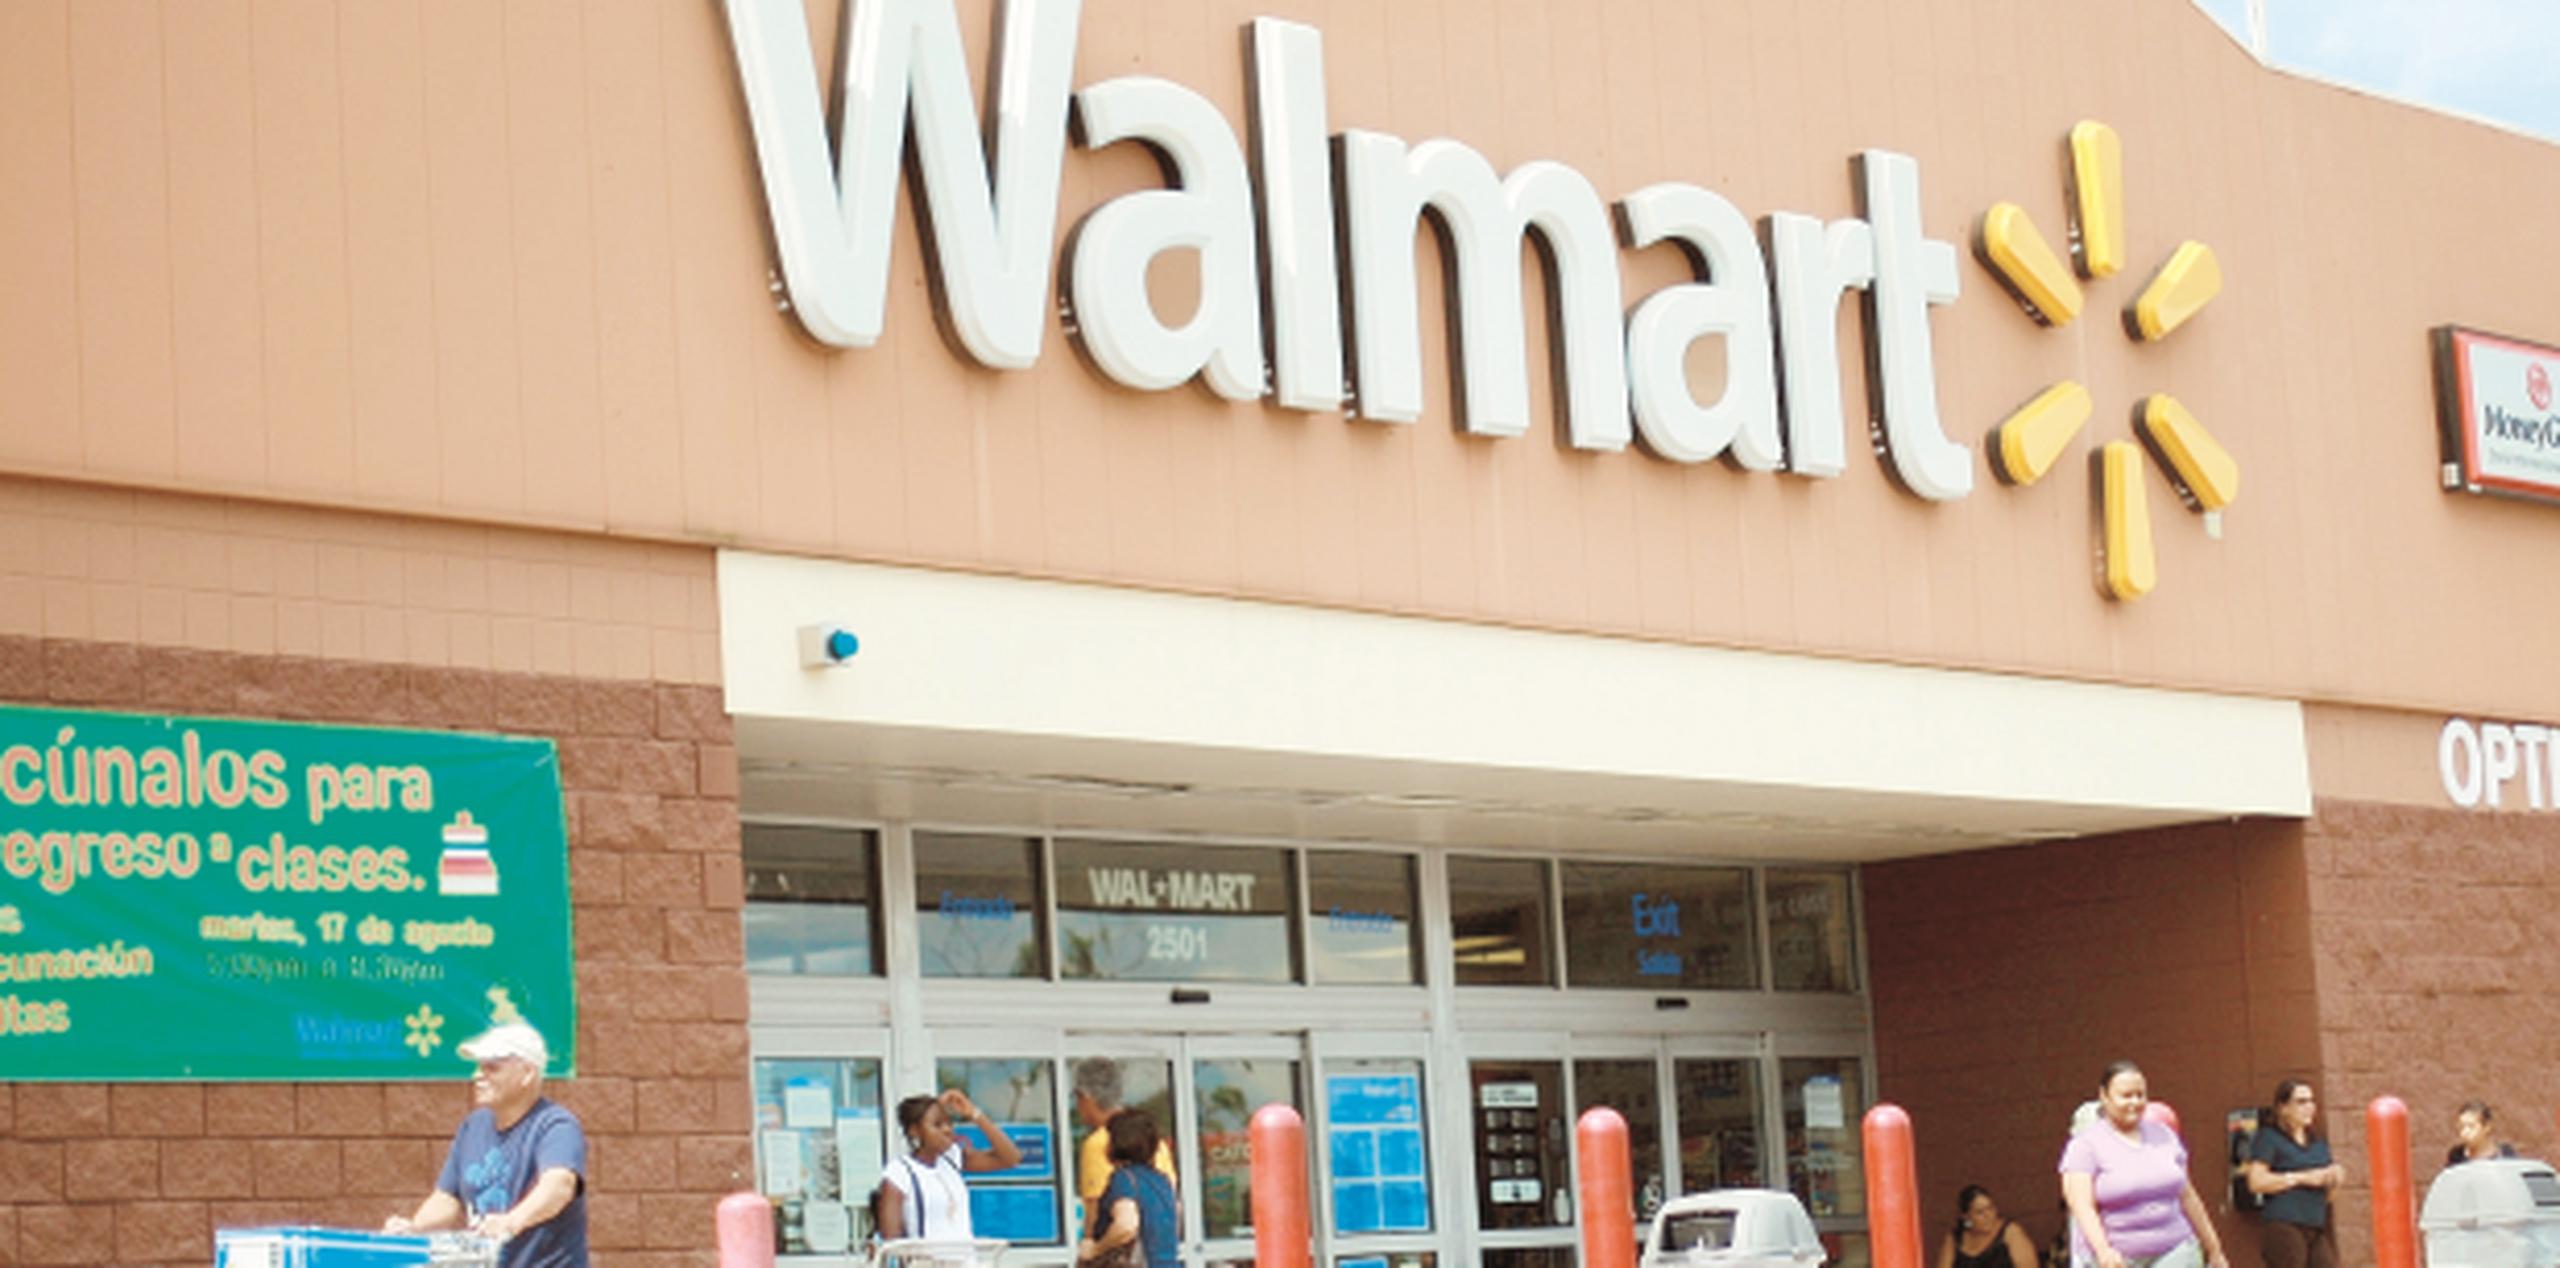 Walmart, Amigo y Sam’s aumentaron sus operaciones el domingo sin reclutar nuevos empleados, pero estiman que un centenar de contrataciones pudiera realizarse en menos de un año para cumplir con la demanda. (Archivo)